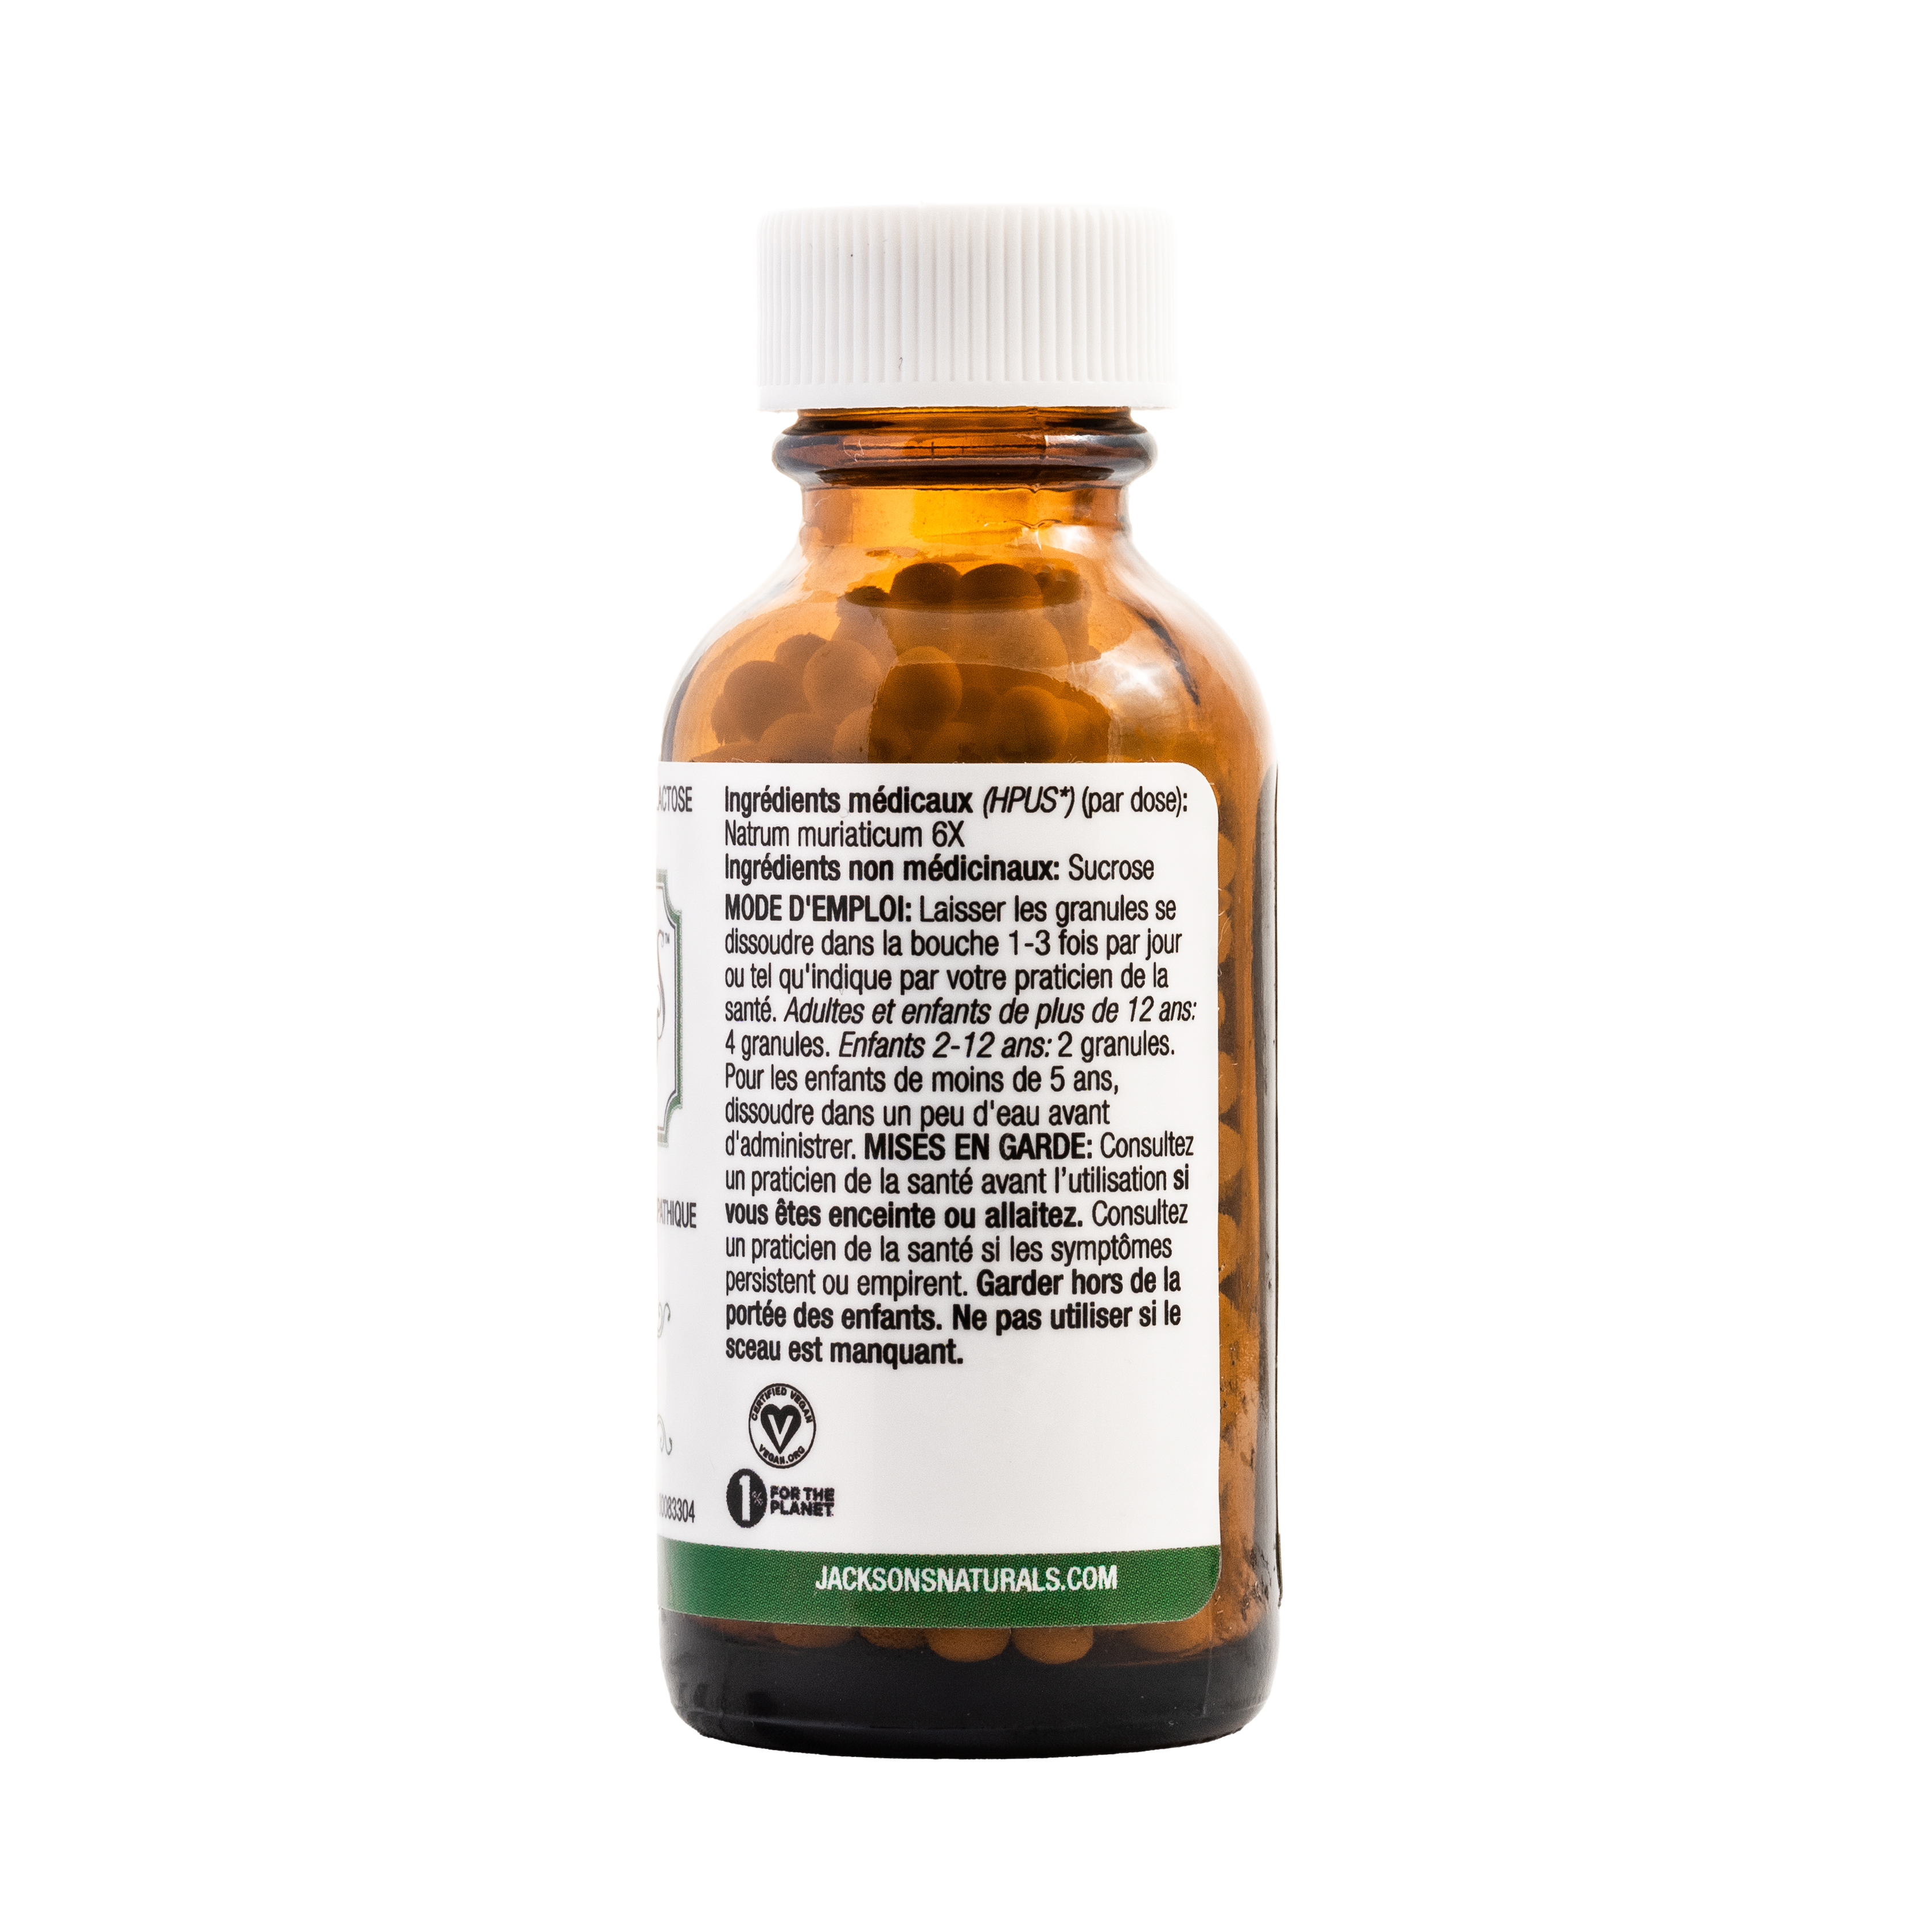 #9 Nat mur 6X (Chlorure de sodium) - Sel de cellules de Schuessler (tissus) certifié végétalien et sans lactose